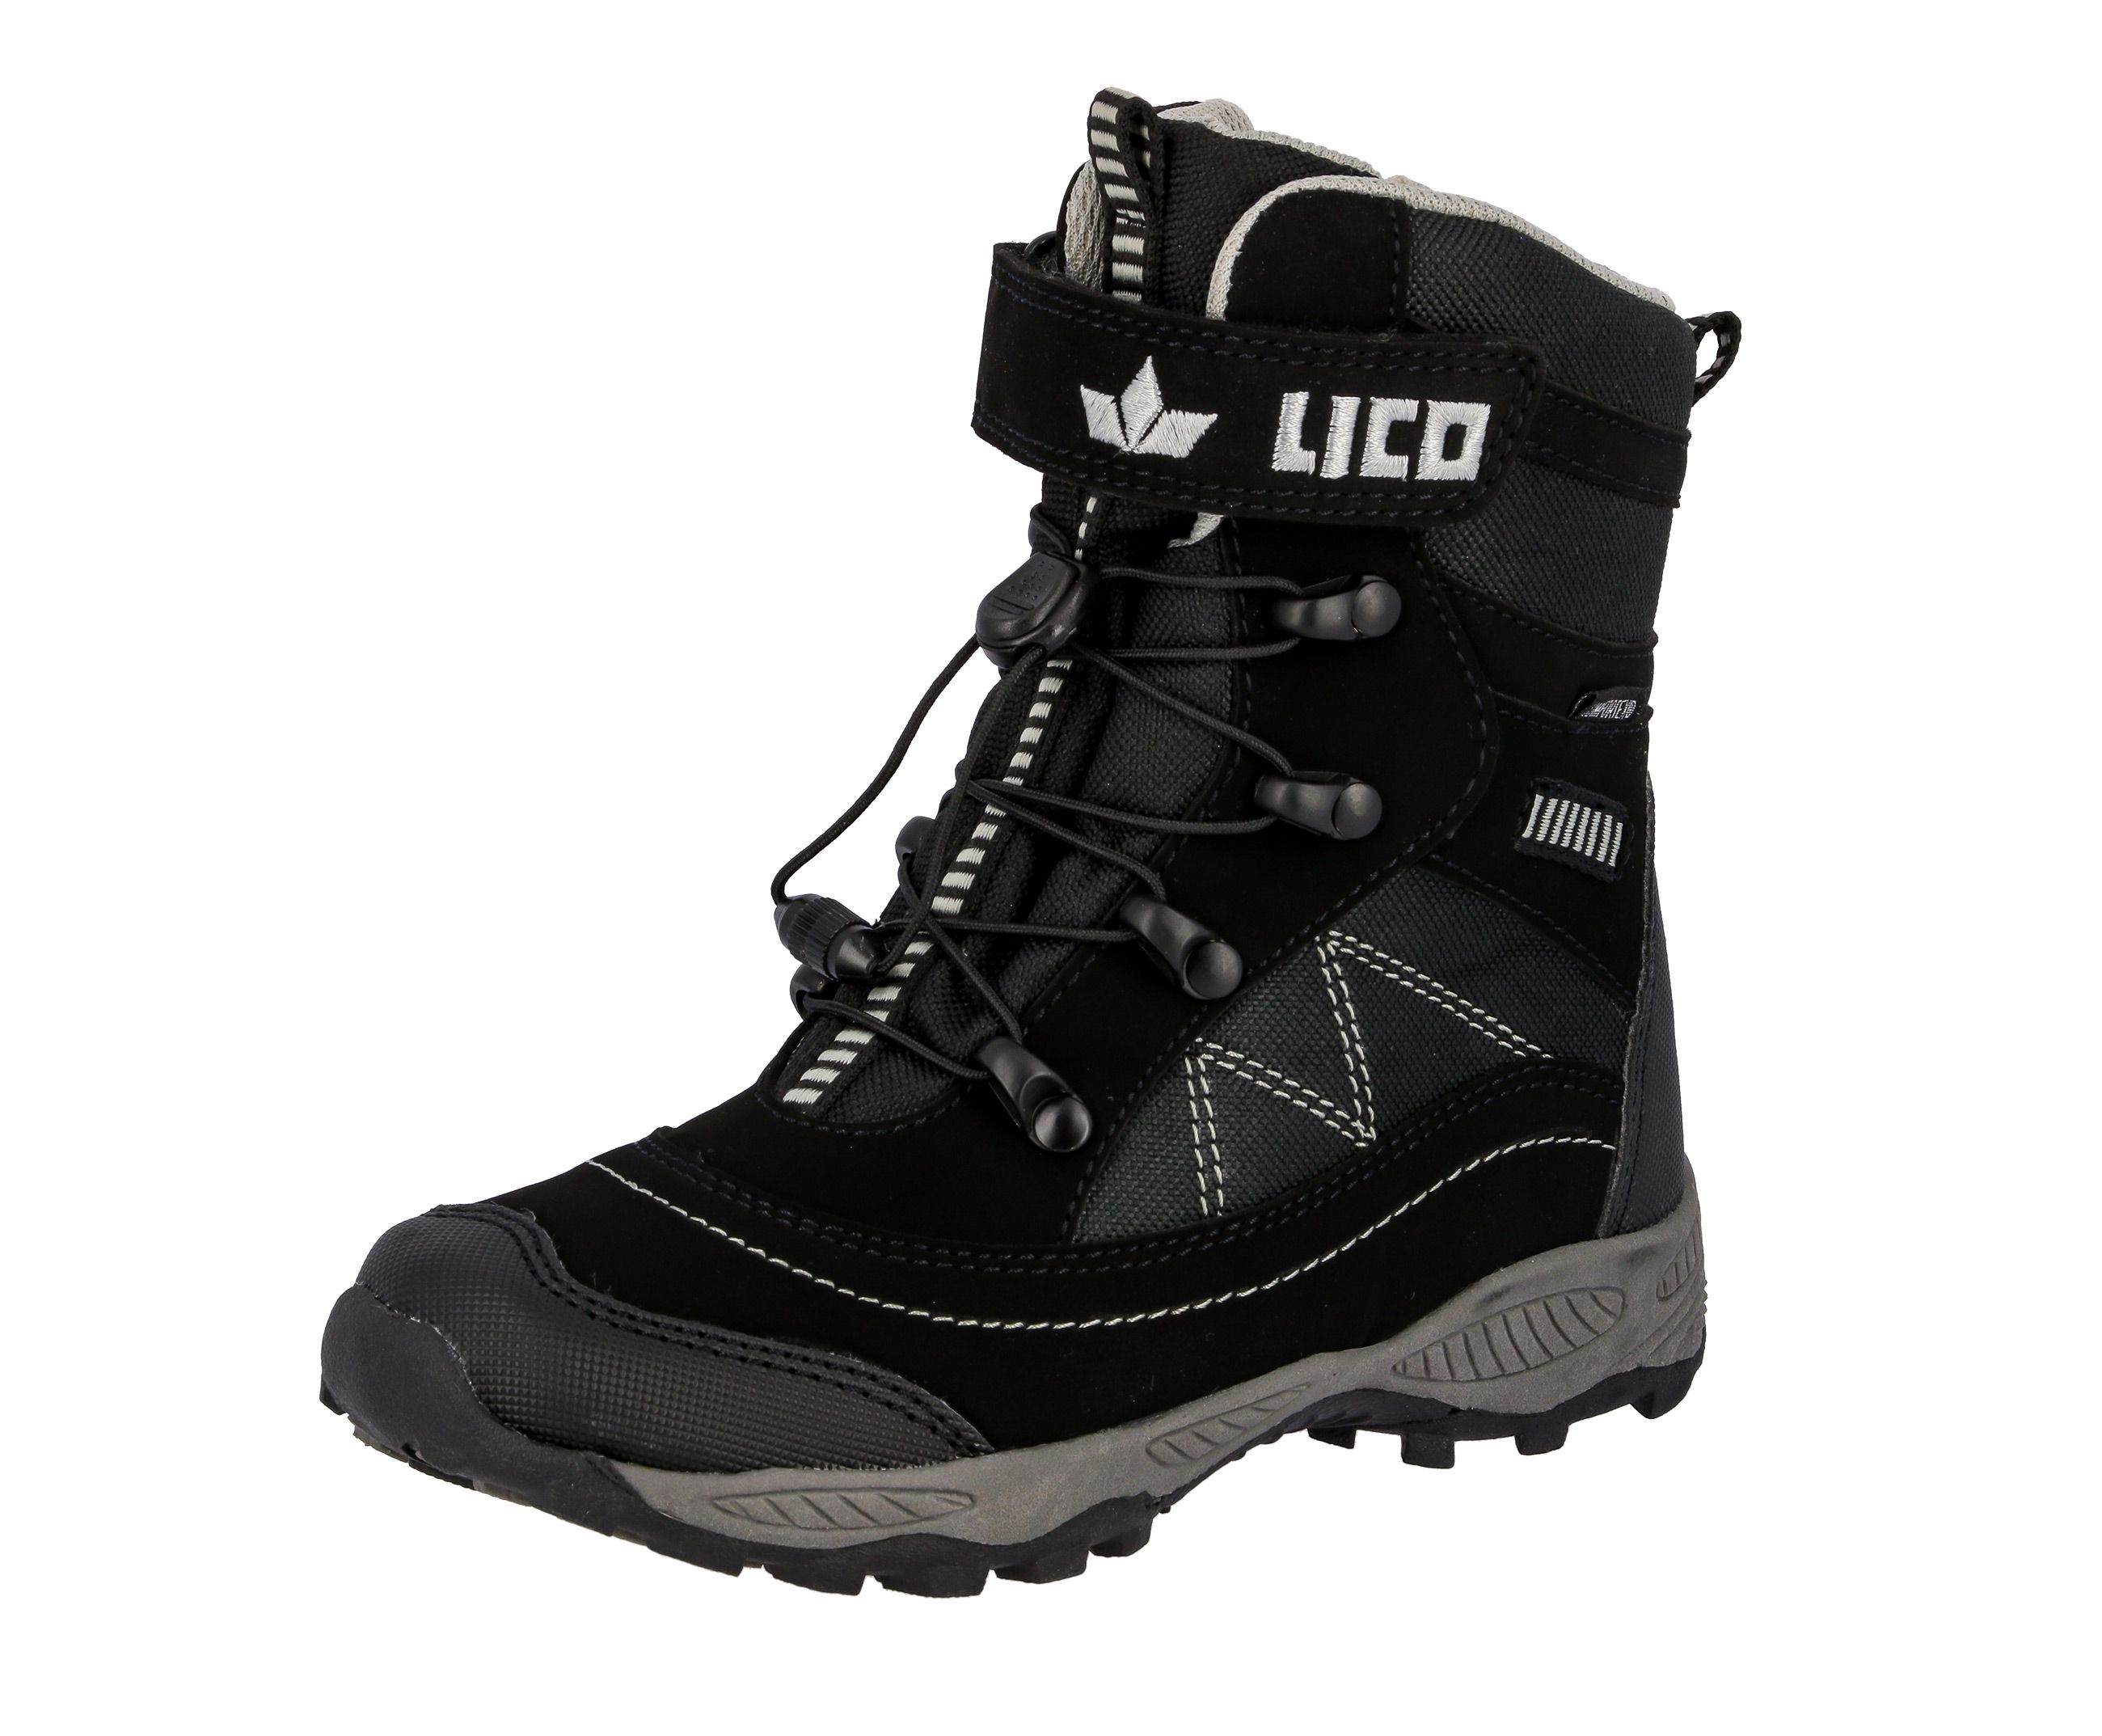 Lico Schuhe bei OTTO bestellen günstig